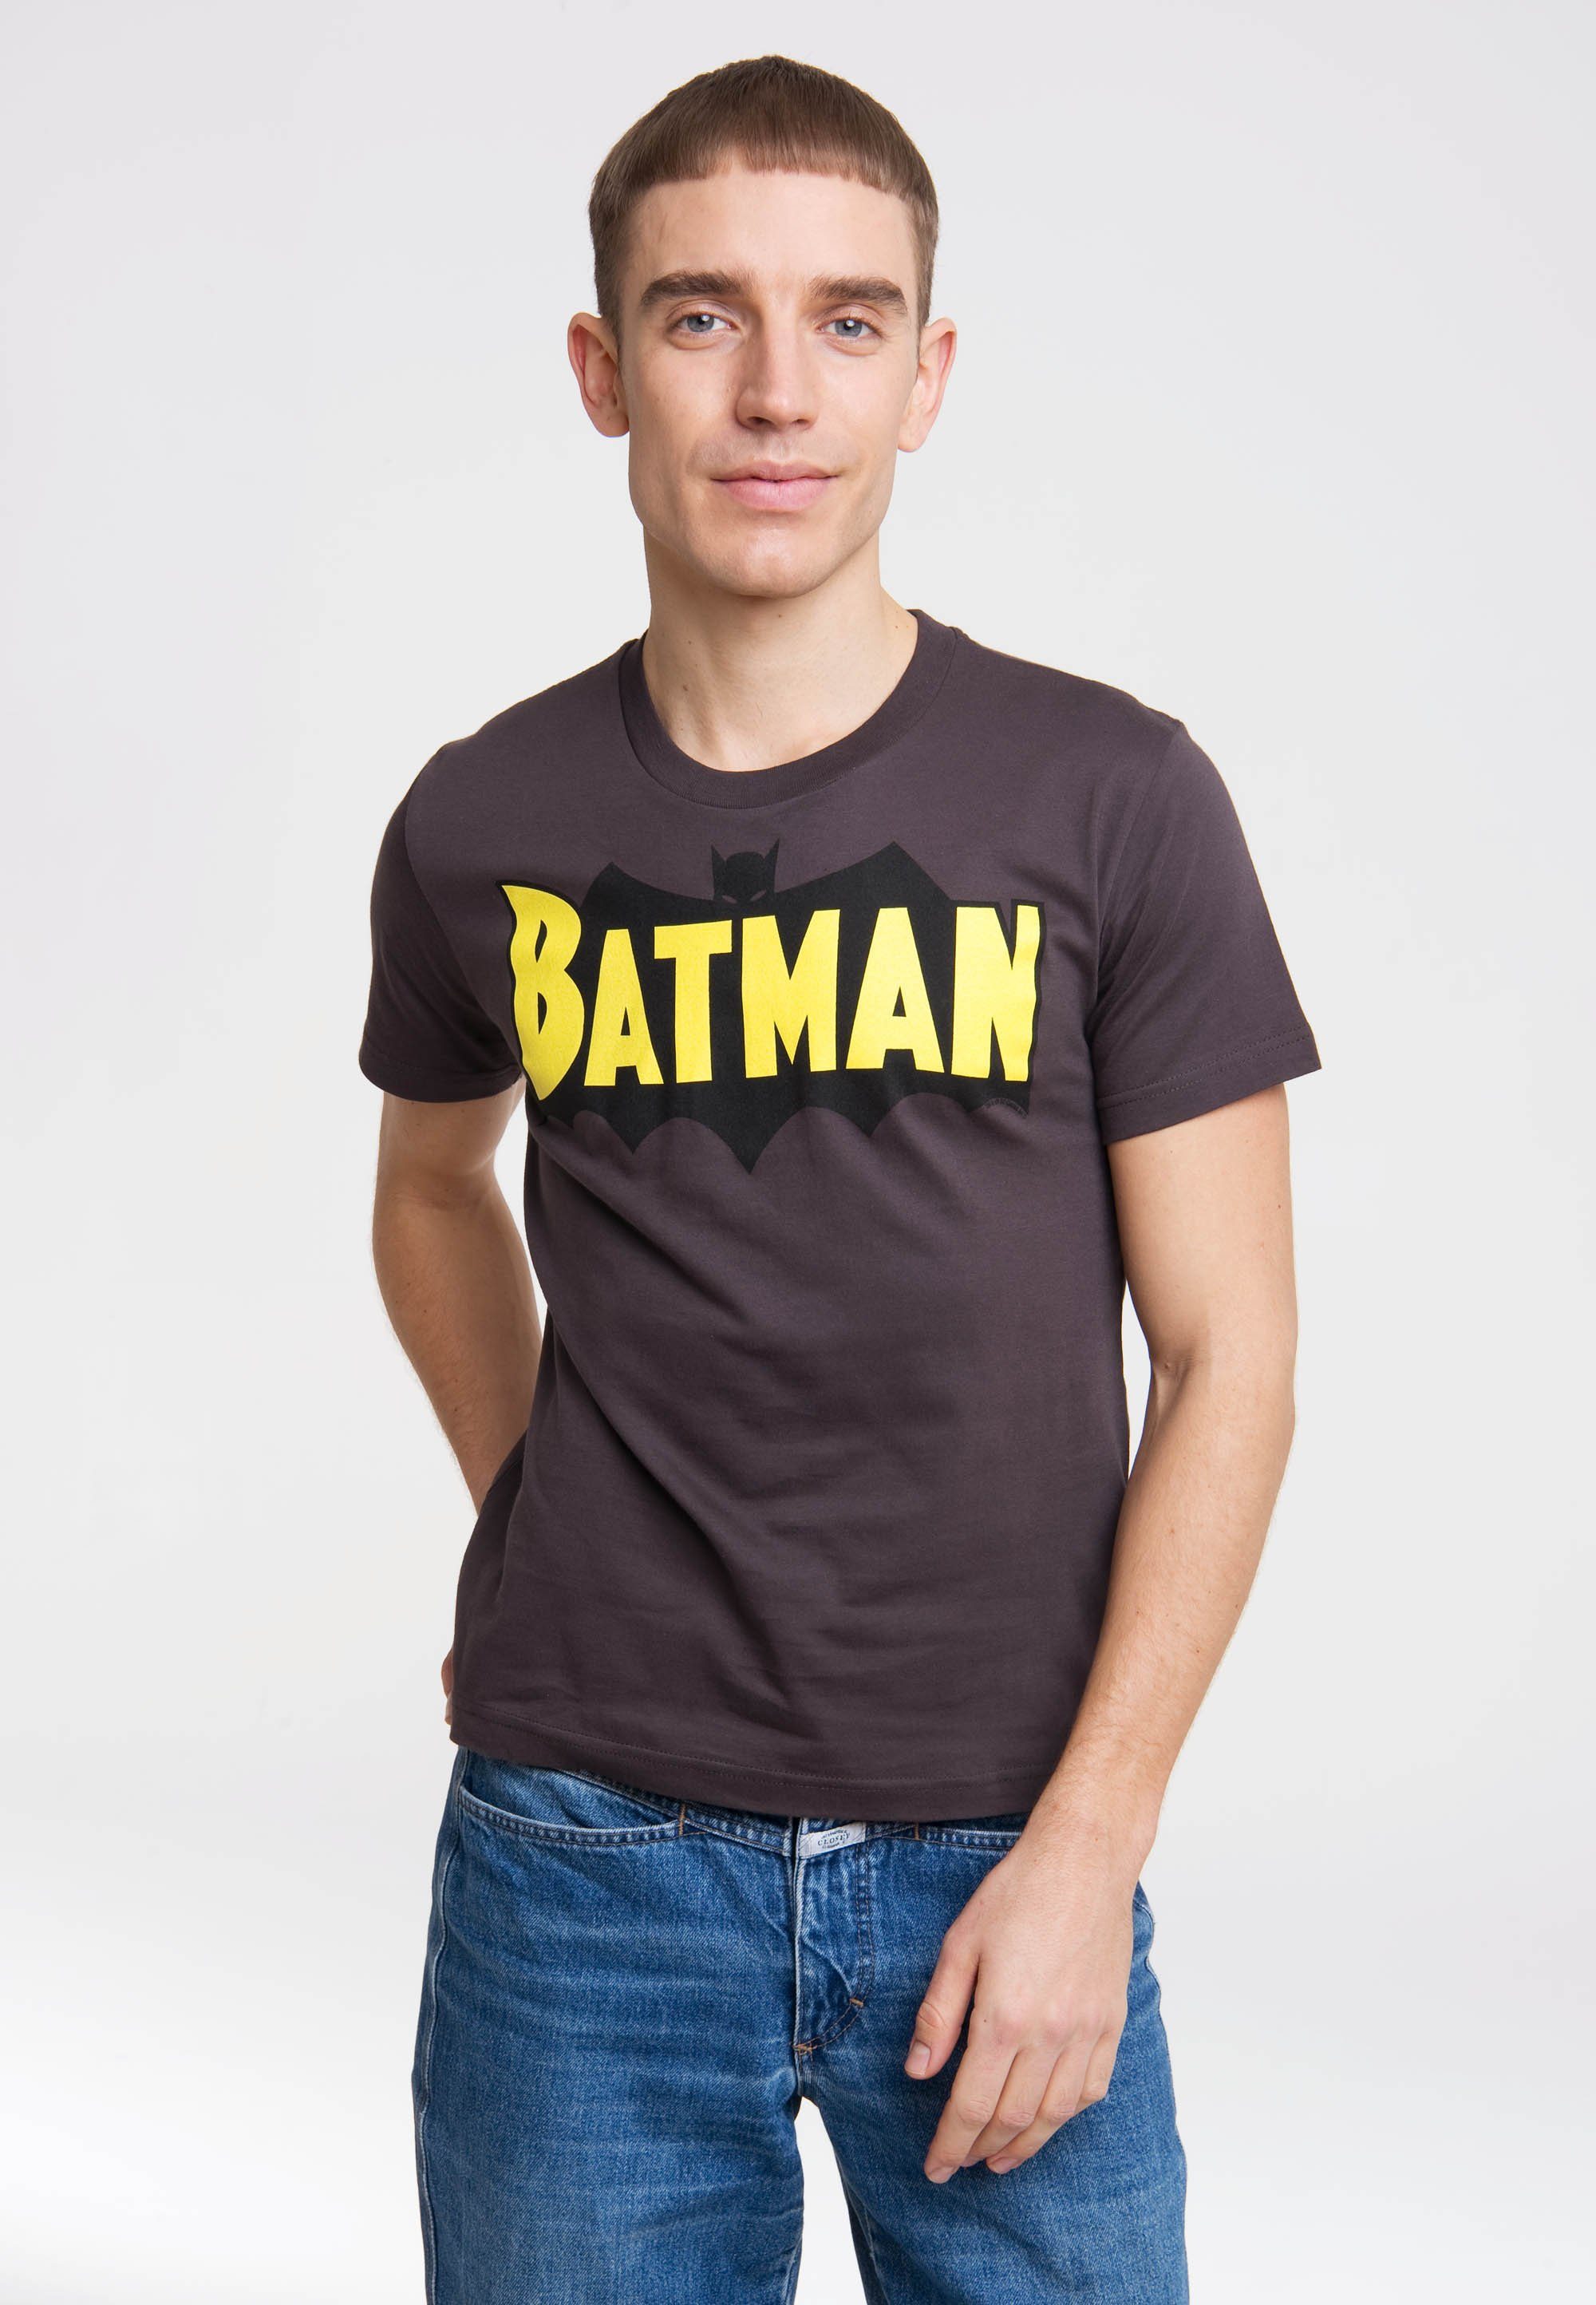 coolem WINGS Superhelden-Logo T-Shirt - BATMAN LOGOSHIRT mit